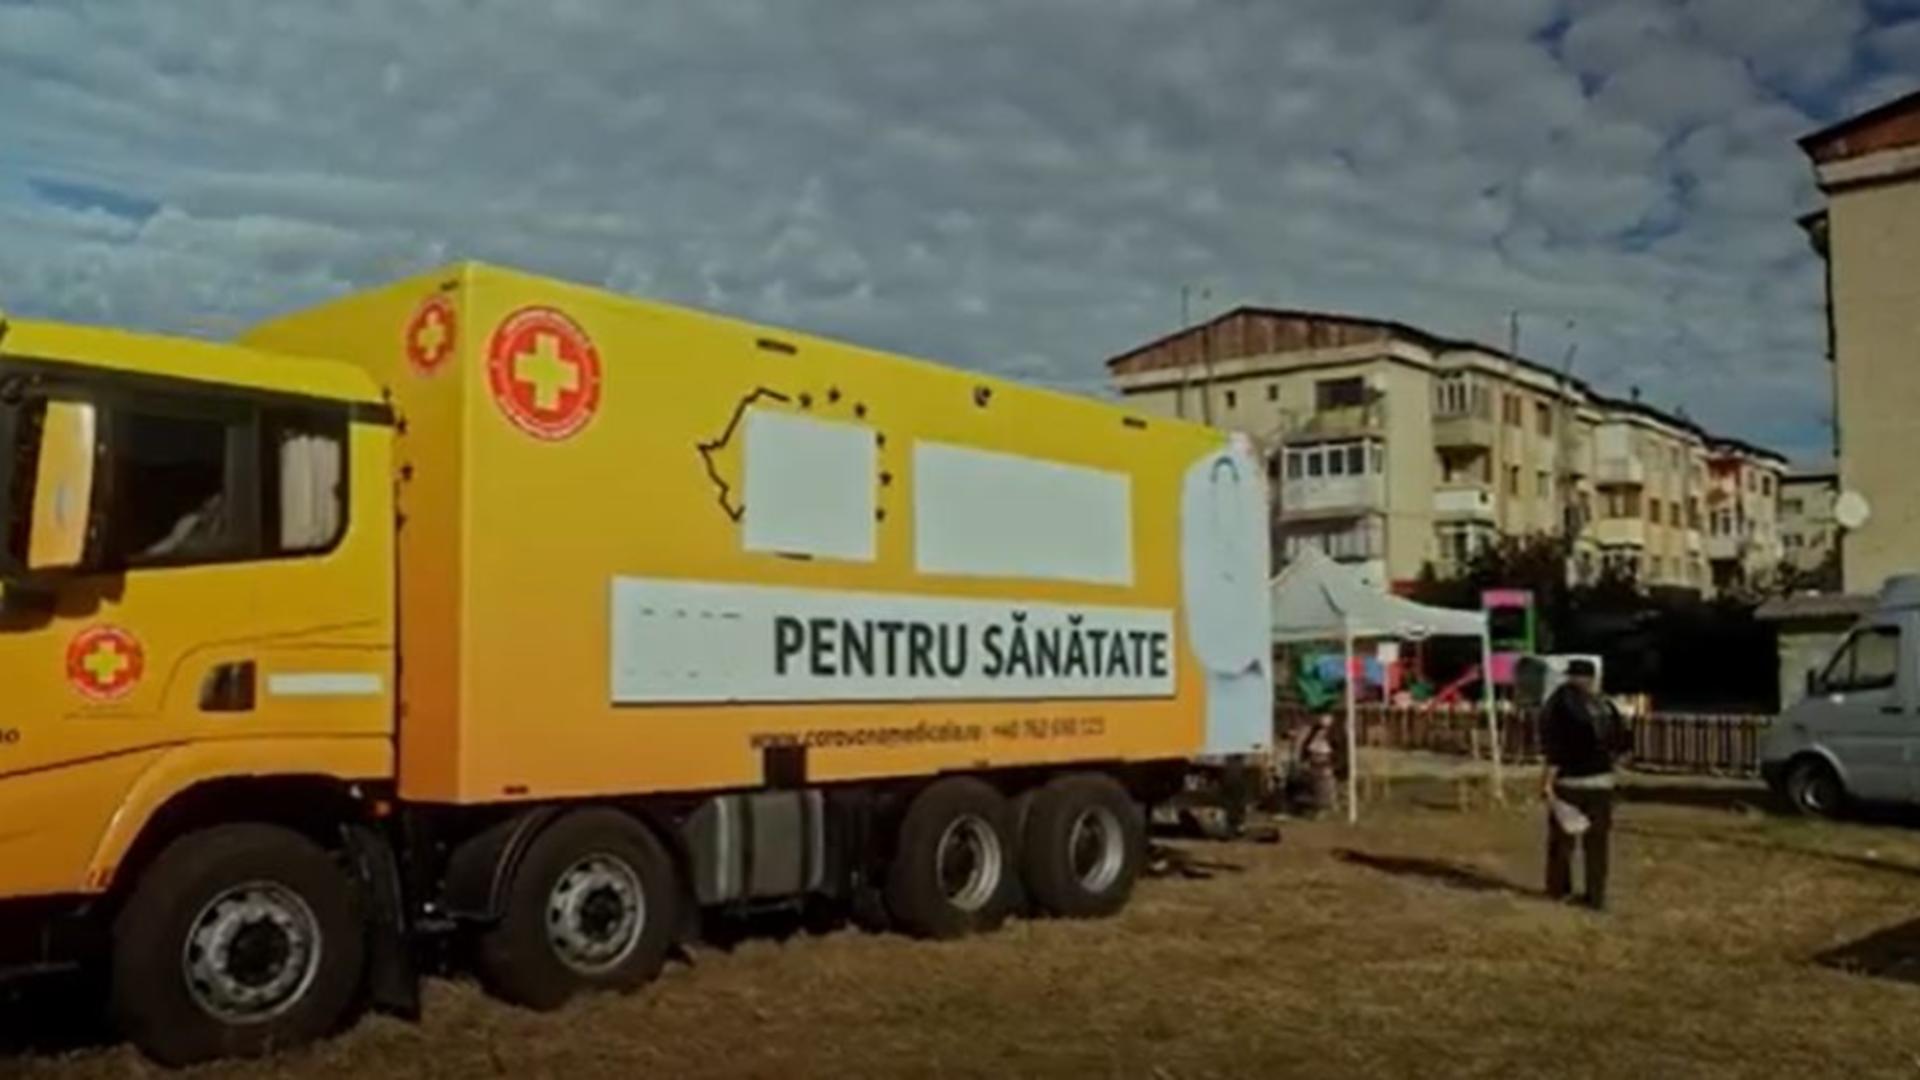 Caravana “România Suverană” alături de spitalul mobil AUR, consultații gratuite pentru mii de români – VIDEO